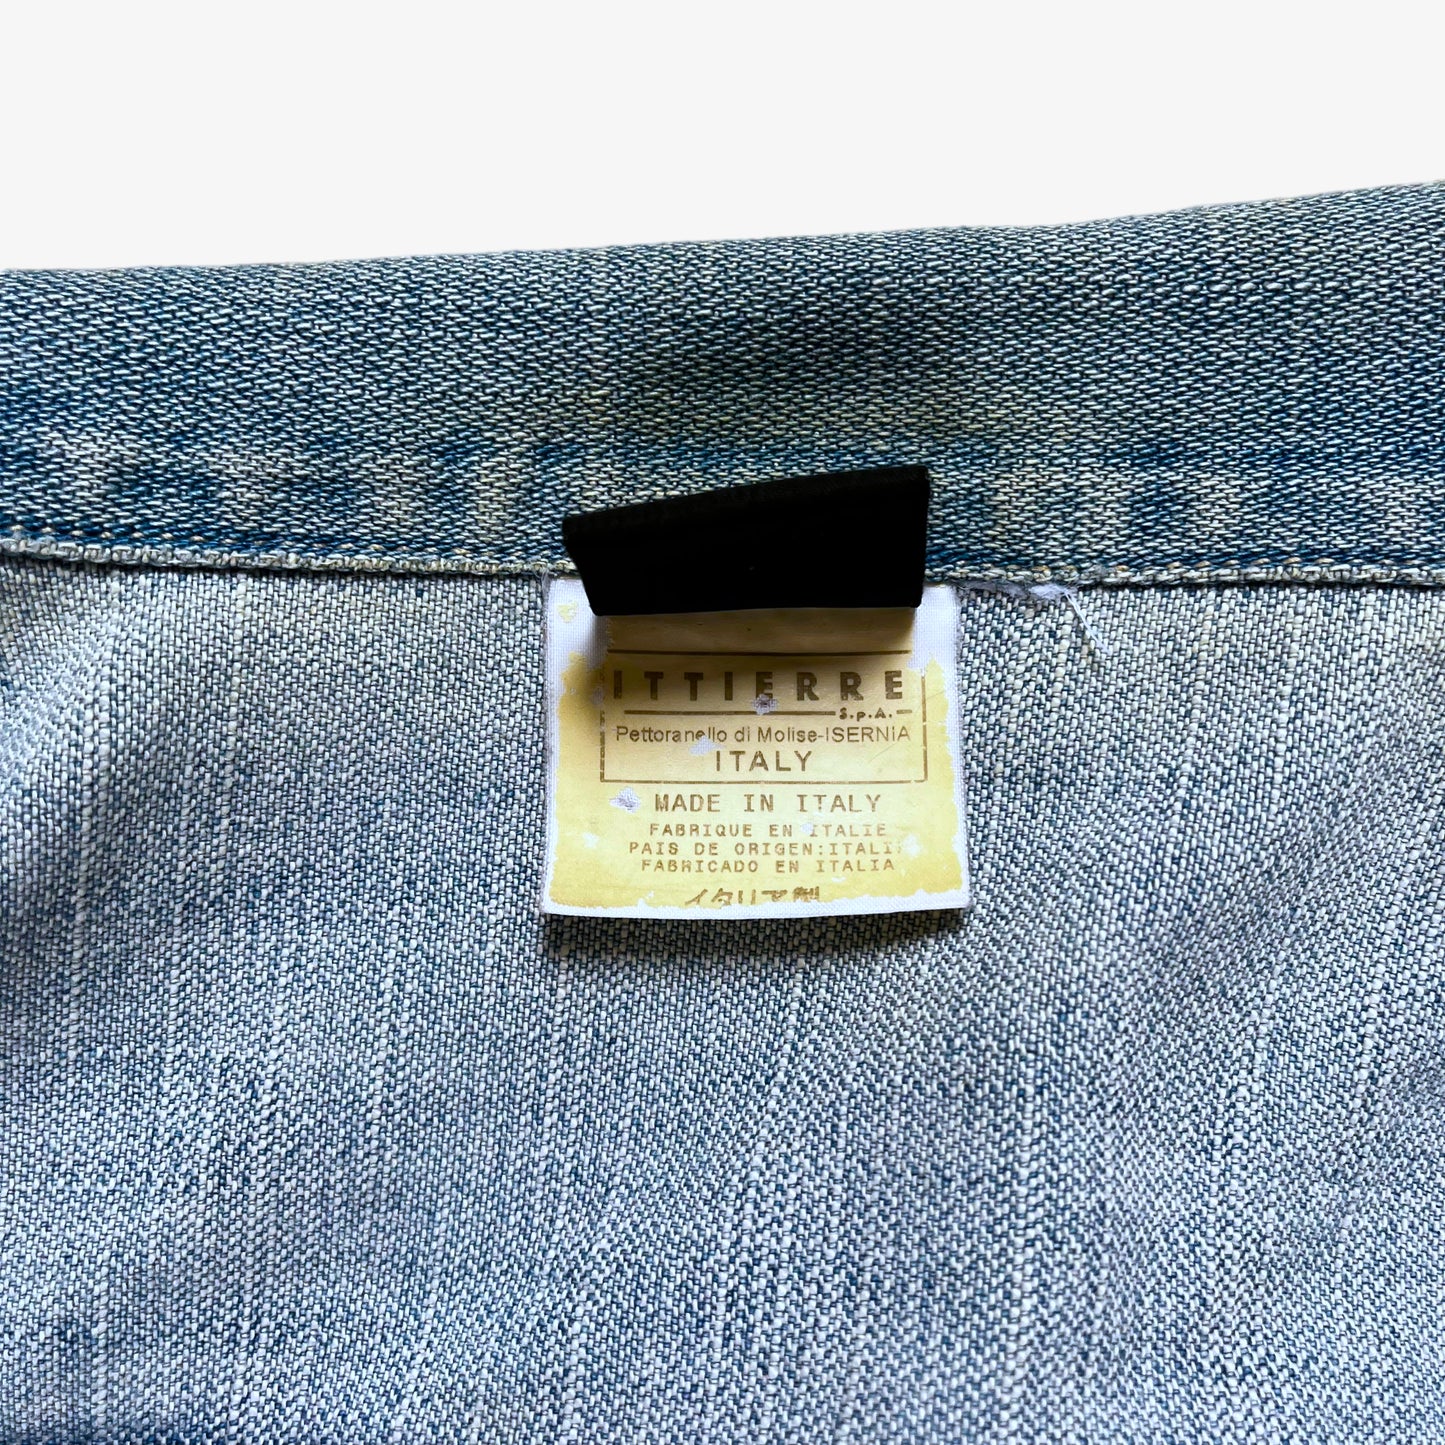 Vintage 90s Versace Jeans Couture Denim Jacket Inside Label - Casspios Dream